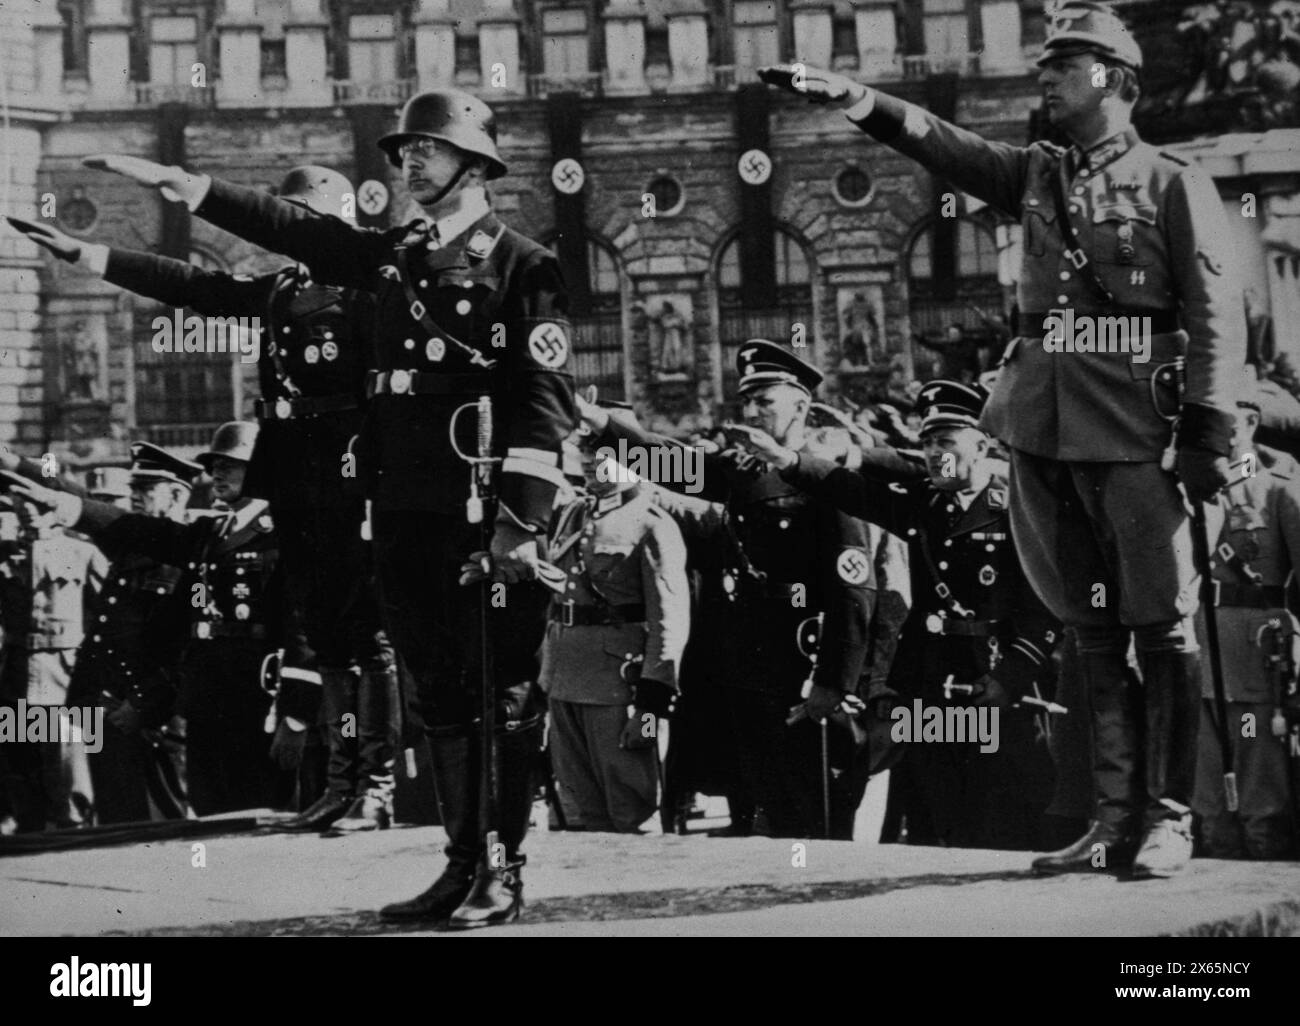 Le nazi allemand Heinrich Himmler, chef des SS et de la Gestapo, et le général Kurt Daluege, chef de la police de Vienne, prêtant serment d'allégeance après l'Anschluss, Autriche 1938 Banque D'Images